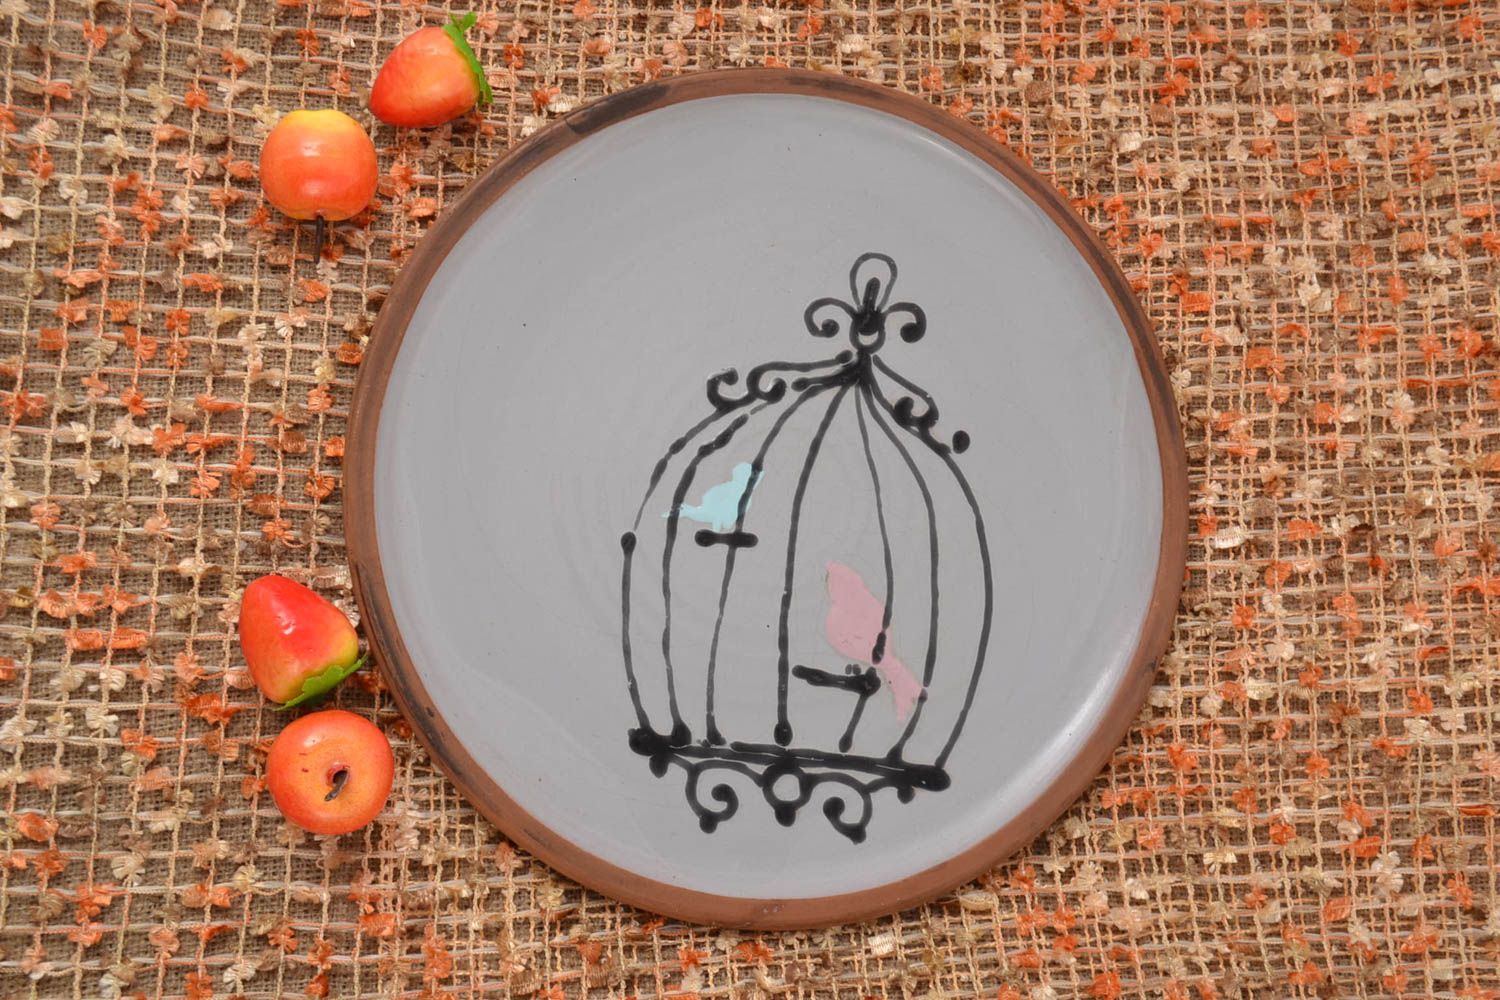 Handmade flacher Teller Keramik Geschirr bemalt für Küchen Deko Vögel schön foto 1